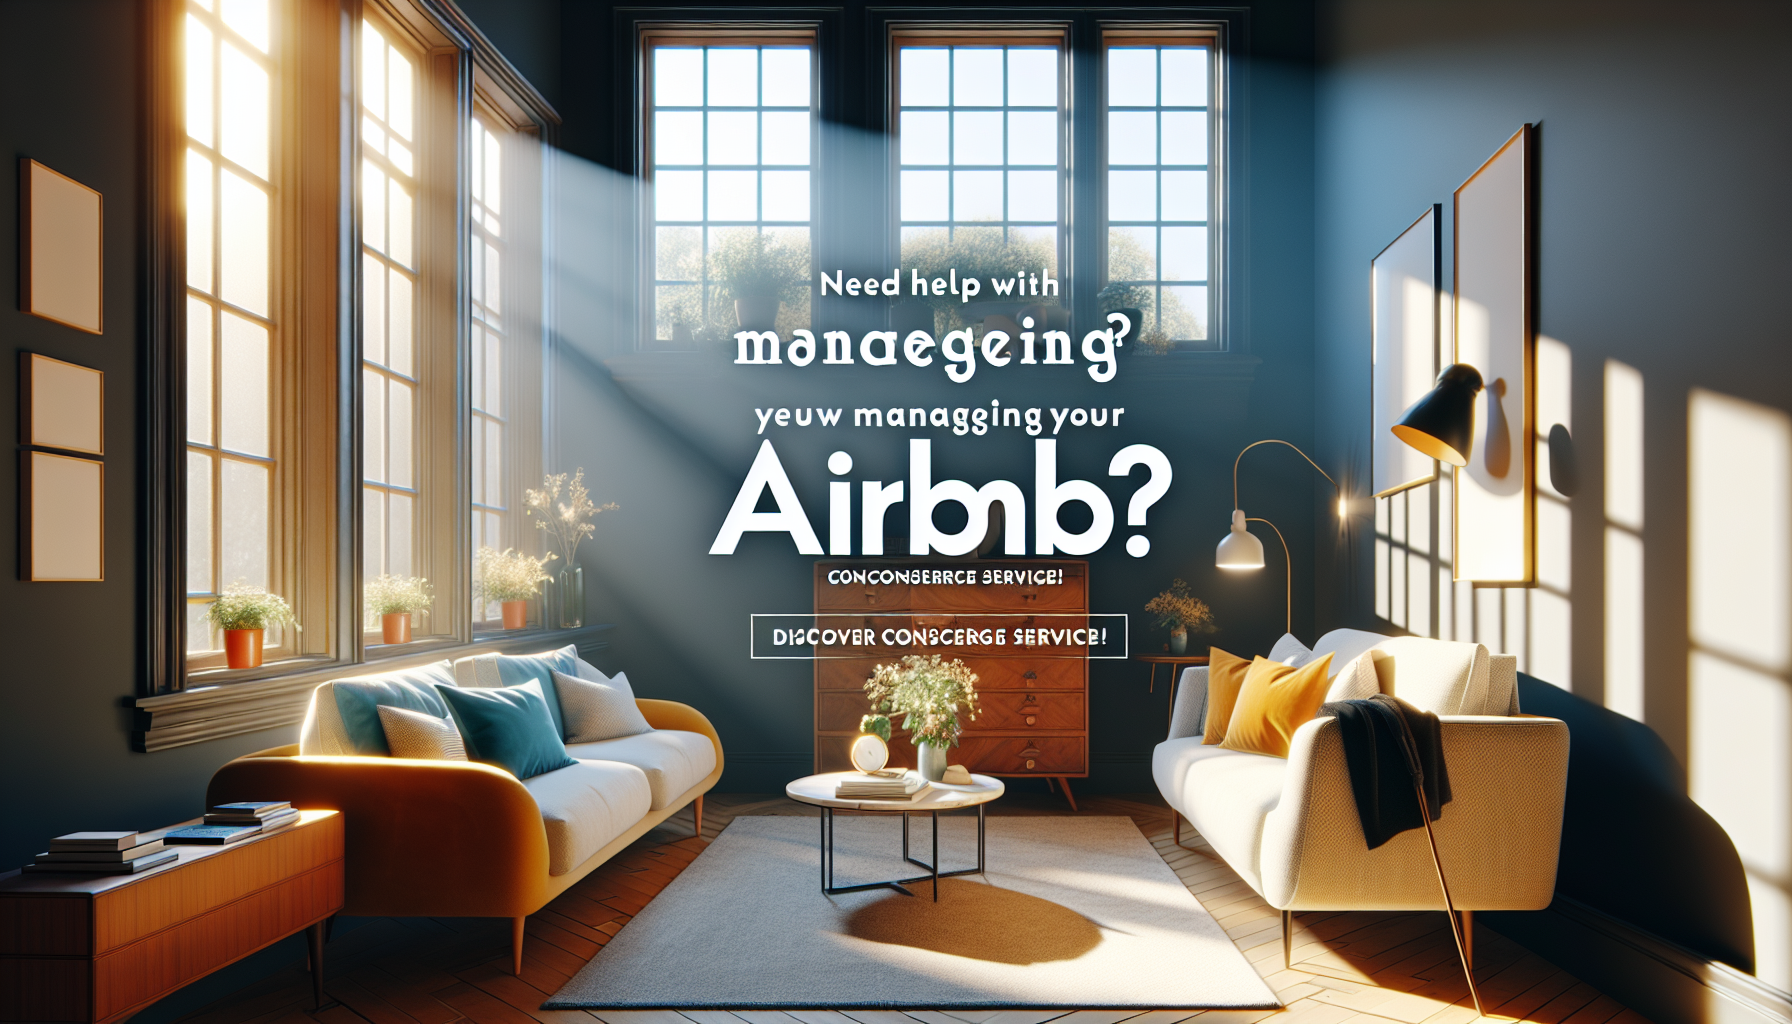 besoin d'aide avec la gestion de votre airbnb ? découvrez notre service de conciergerie pour optimiser la gestion de votre location saisonnière.